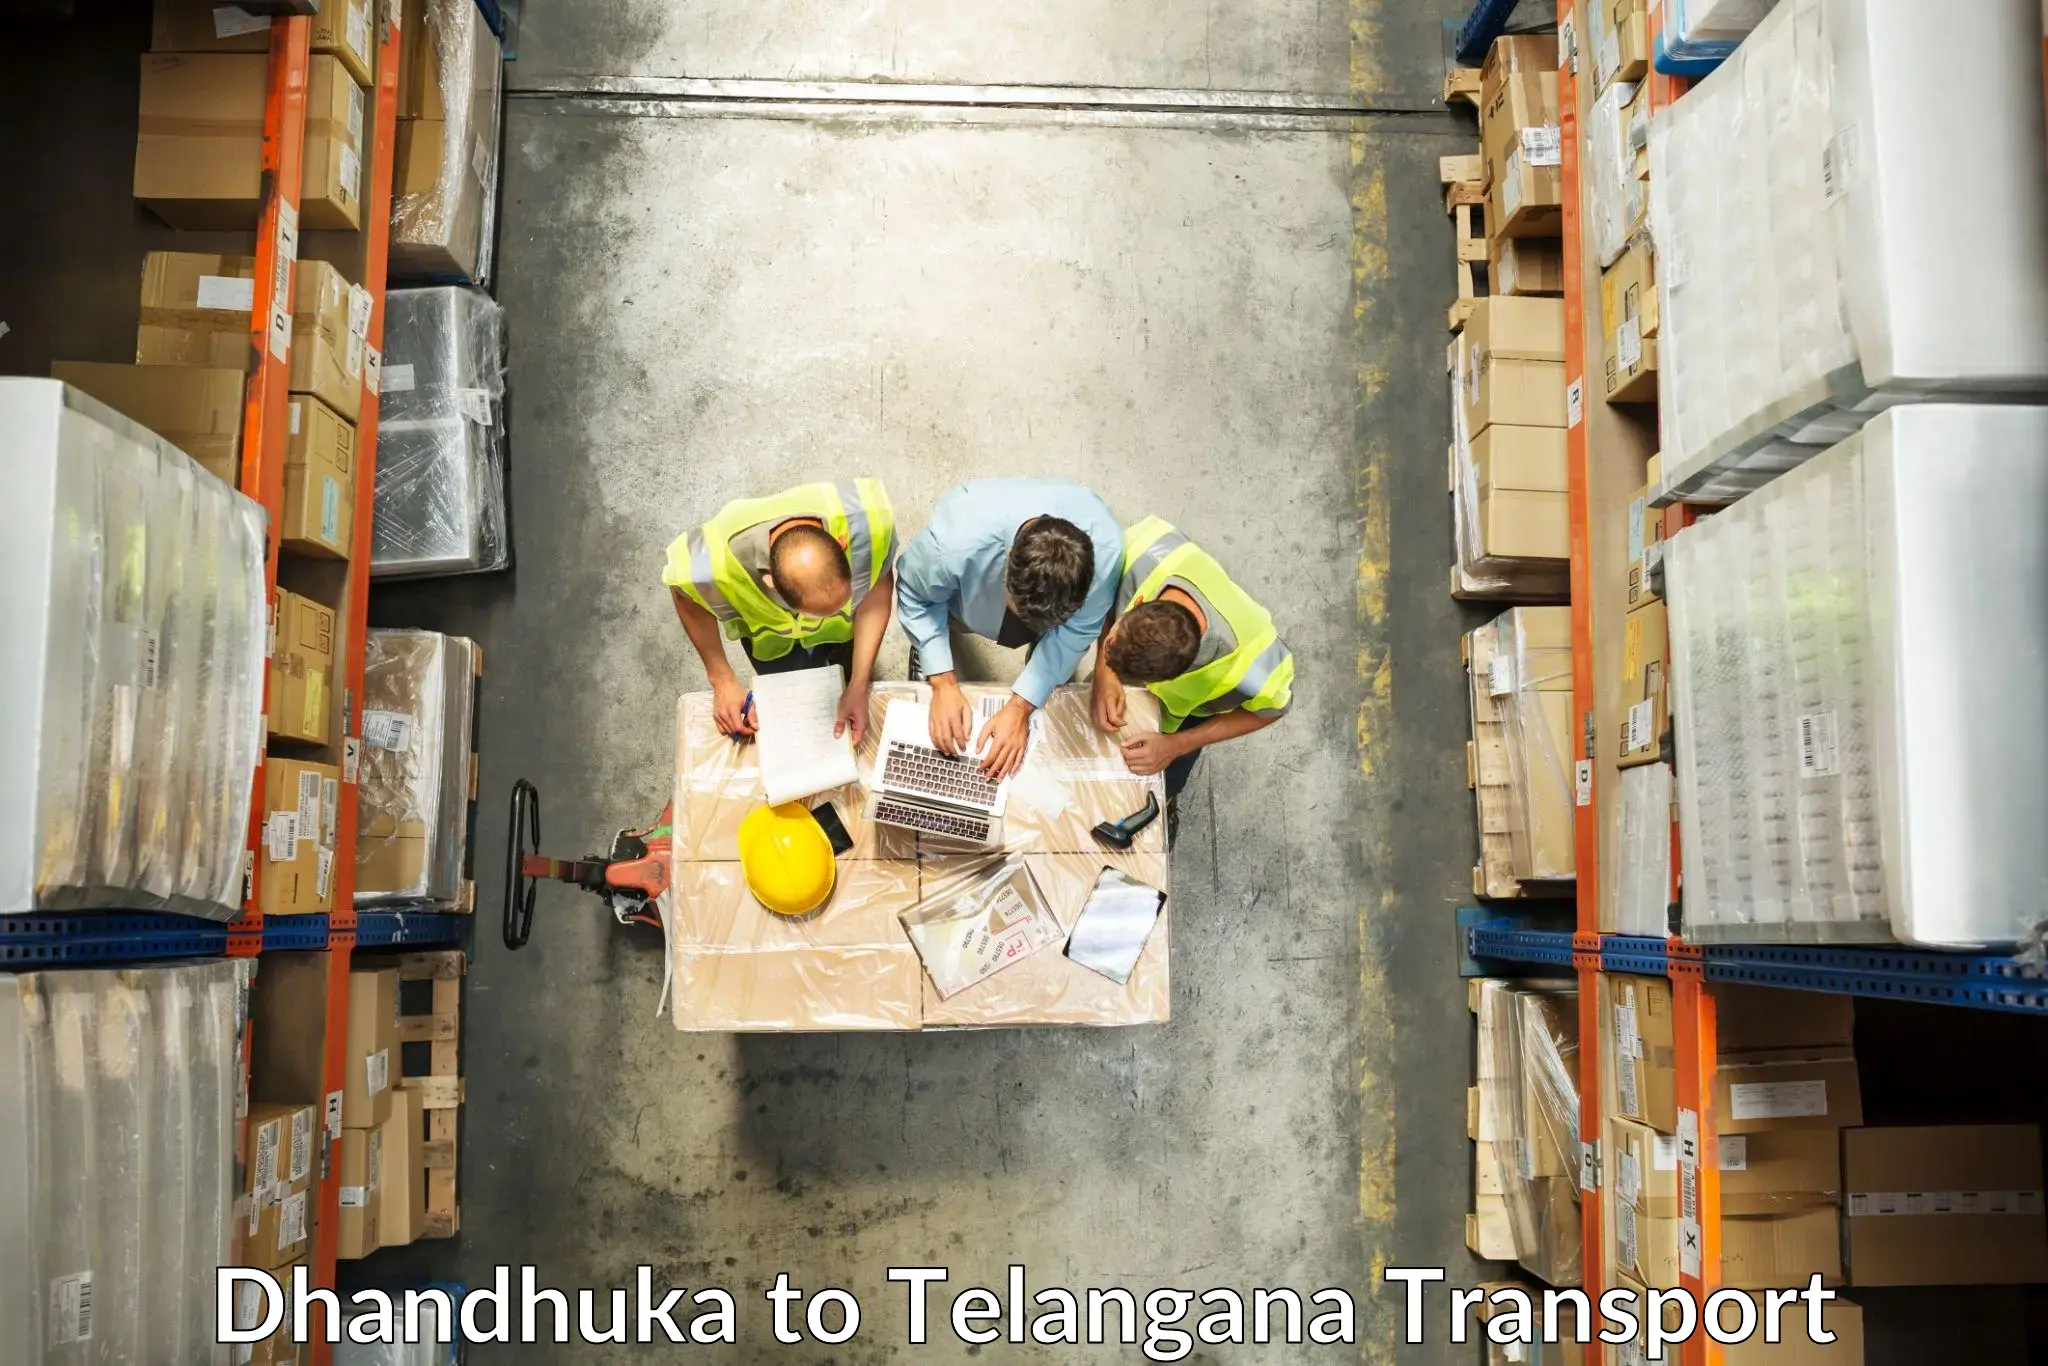 Goods delivery service Dhandhuka to Kothagudem